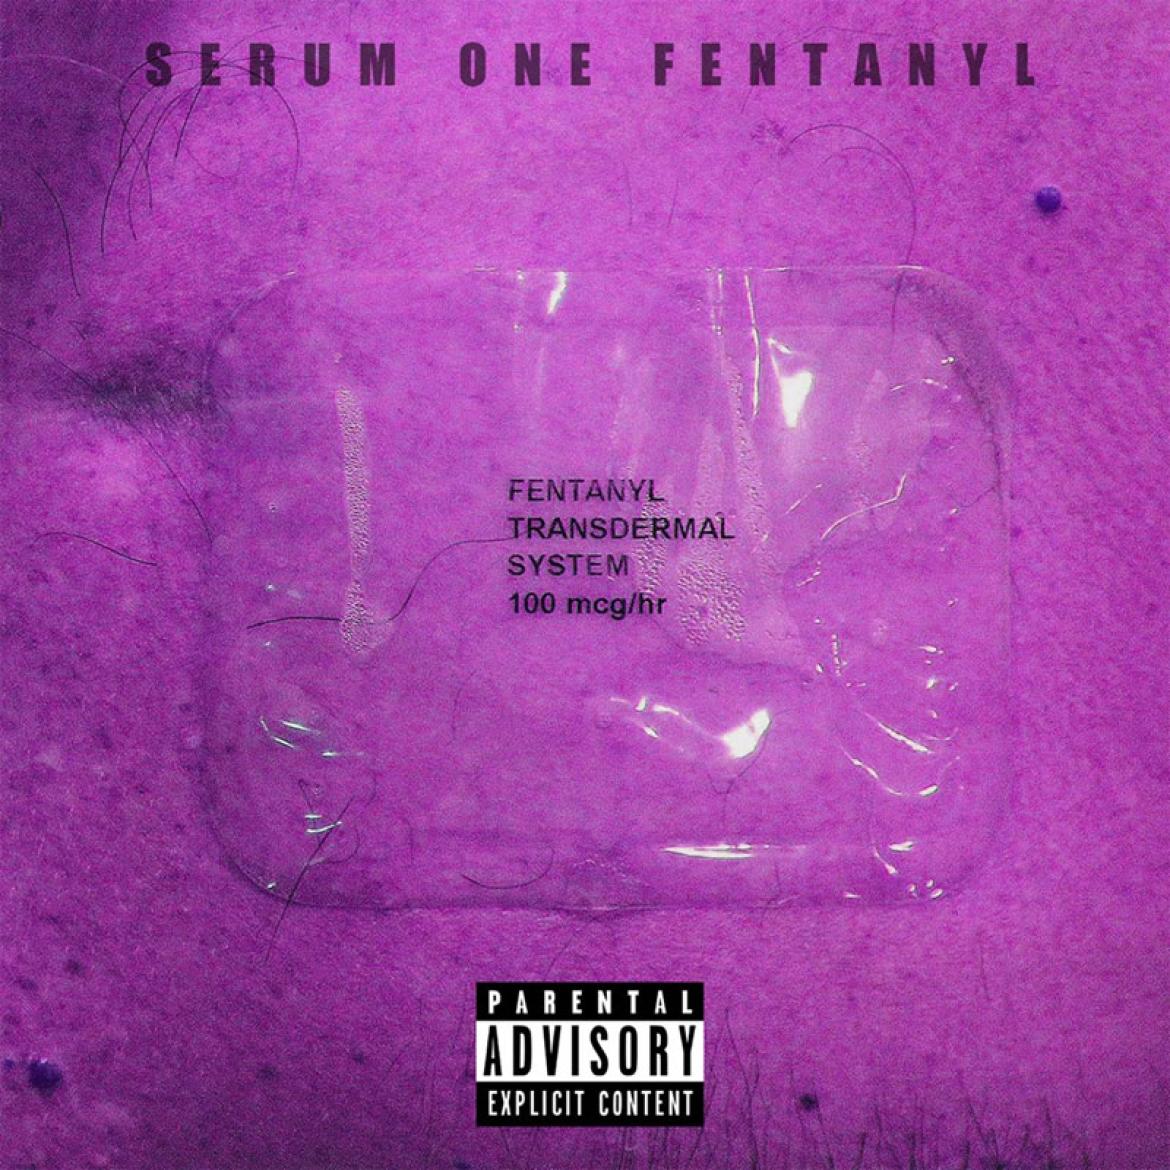 Serum one - Fentanyl